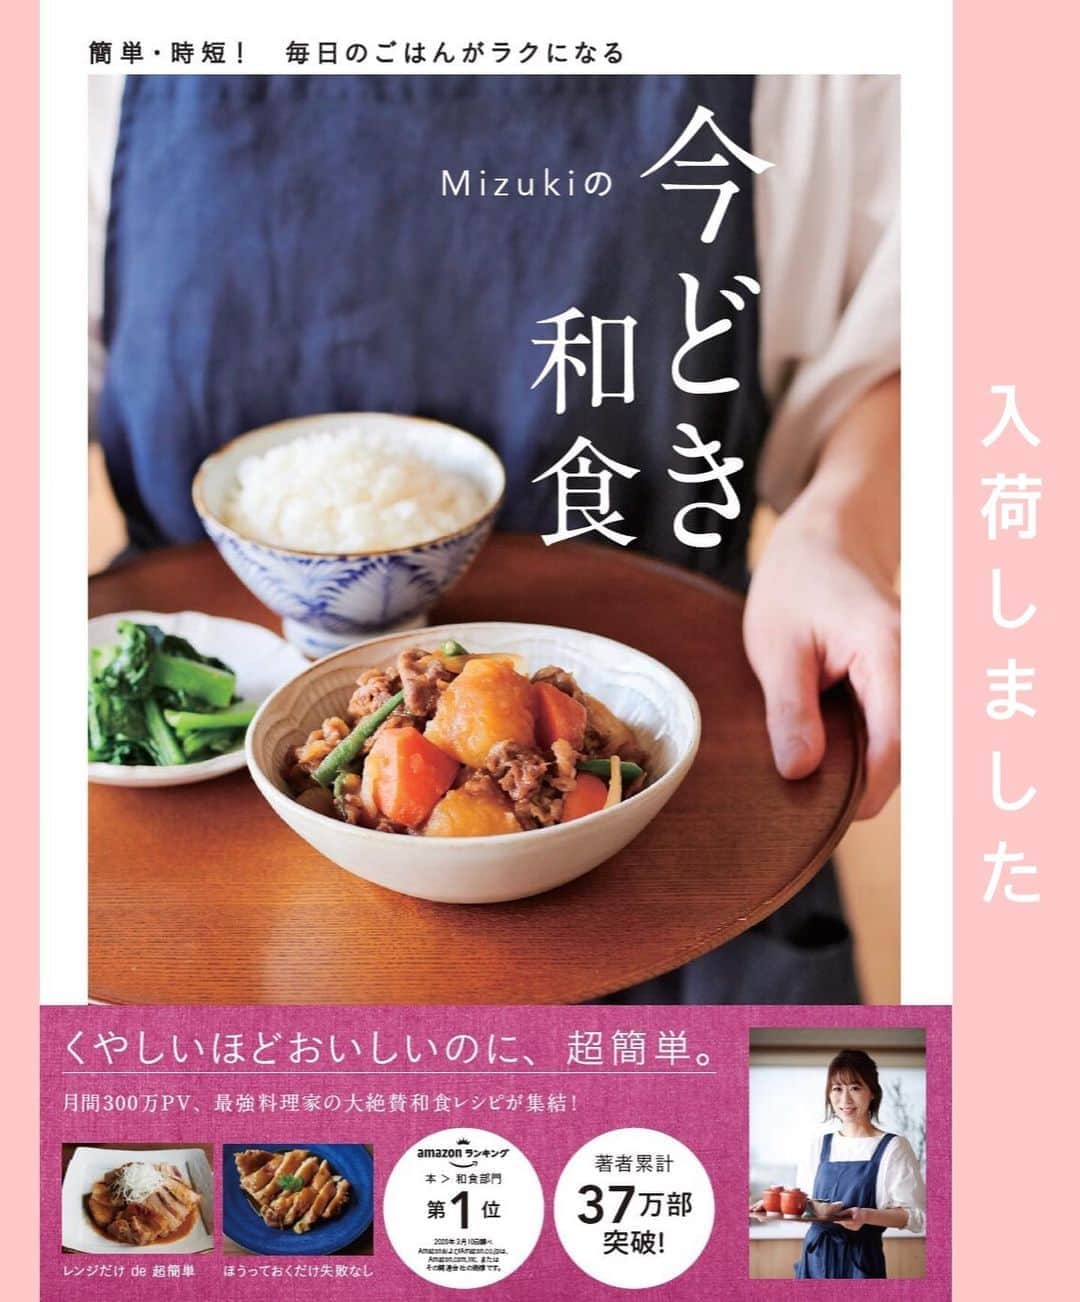 Mizuki【料理ブロガー・簡単レシピ】さんのインスタグラム写真 - (Mizuki【料理ブロガー・簡単レシピ】Instagram)「・﻿ 【レシピ】ーーーーーー﻿ ♡ささみdeとり天♡﻿ ーーーーーーーーーーー﻿ ﻿ ﻿ ﻿ おはようございます(*^^*)﻿ ﻿ 今日ご紹介させていただくのは﻿ 大分県名物［とり天］！﻿ ﻿ 今回は6年前にアップしたレシピを﻿ ささみで、漬け込み&天ぷら粉なしで、﻿ 更に揚げ焼きで作れるように﻿ ブラッシュアップしました(*´艸`)﻿ ﻿ そのままで十分味はついていますが﻿ 辛子ポン酢や天つゆにつけても﻿ 最高に美味しいですよ〜♡♡﻿ とっても簡単にできるので﻿ よかったらお試し下さいね(*^^*)﻿ ﻿ ﻿ ﻿ ーーーーーーーーーーーーーーーーーーーー﻿ 【2〜3人分】﻿ ささみ...4〜5本﻿ ●酒・醤油...各小2﻿ ●砂糖・ごま油...小1/2﻿ ●にんにく・生姜...各チューブ2cm﻿ ☆卵...1個﻿ ☆薄力粉...50g﻿ ☆冷水...大2﻿ サラダ油...適量﻿ ﻿ 1.ささみは真ん中に切り込みを入れて開き、長さを半分に切って●を揉み込む。﻿ 2.☆をざっくり混ぜ合わせて衣を作る。(ポイント参照)﻿ 3.フライパンに1cmの油を中火で熱し、1を2にからめて入れ、4〜5分揚げ焼きにする。﻿ ーーーーーーーーーーーーーーーーーーーー﻿ ﻿ ﻿ ﻿ 《ポイント》﻿ ♦︎衣の材料は混ぜ過ぎず、粉っぽさが残るくらいにざっくり混ぜればOK♩﻿ ♦︎衣はなるべくたっぷりつけて下さい♩﻿ ♦︎ささみの代わりに一口大に切ったむね肉で作っても♩﻿ ﻿ ﻿ ﻿ ﻿ ﻿ ﻿ ﻿ ＿＿＿＿＿＿＿＿＿＿＿＿＿＿＿＿＿＿＿﻿ 📕6刷重版しました📕﻿ 簡単・時短！ 毎日のごはんがラクになる﻿ ✨🦋 【 #Mizukiの今どき和食 】🦋✨﻿ ＿＿＿＿＿＿＿＿＿＿＿＿＿＿＿＿＿＿＿﻿ なるべく少ない材料で﻿ 手間も時間も省きながら﻿ 簡単にできるおいしい和食レシピ♩﻿ 簡単に失敗なくマスターできる一冊で﻿ もっと気軽に、カジュアルに﻿ 和食を楽しんで下さいね(*^^*)﻿ ＿＿＿＿＿＿＿＿＿＿＿＿＿＿＿＿＿＿＿﻿ ﻿ ﻿ ﻿ ＿＿＿＿＿＿＿＿＿＿＿＿＿＿＿＿＿＿＿﻿ 🎀6刷重版しました🎀﻿ 混ぜて焼くだけ。はじめてでも失敗しない！﻿ 【#ホットケーキミックスのお菓子 】﻿ ﻿ 一冊まるっとホケミスイーツ♩﻿ 普段のおやつから﻿ 特別な日にも使えるレシピを﻿ この一冊に詰め込みました(*^^*)﻿ ホットケーキミックスを使えば﻿ 簡単に本格的なお菓子が作れますよ♡﻿ ＿＿＿＿＿＿＿＿＿＿＿＿＿＿＿＿＿﻿ ﻿ ﻿ ﻿ ﻿ ￣￣￣￣￣￣￣￣￣￣￣￣￣￣￣￣￣￣﻿ レシピを作って下さった際や﻿ レシピ本についてのご投稿には﻿ タグ付け( @mizuki_31cafe )して﻿ お知らせいただけると嬉しいです😊💕﻿ ＿＿＿＿＿＿＿＿＿＿＿＿＿＿＿＿＿＿﻿ ﻿ ﻿ ﻿ ﻿ ﻿ #ささみ#とり天#天ぷら#ヘルシー#揚げない#コスパ#Mizuki#簡単レシピ#時短レシピ#節約レシピ#料理#レシピ#フーディーテーブル#マカロニメイト#おうちごはん#デリスタグラマー#料理好きな人と繋がりたい#食べ物#料理記録#おうちごはんlover#写真好きな人と繋がりたい#foodpic#cooking#recipe#lin_stagrammer#foodporn#yummy#とり天m」8月14日 7時12分 - mizuki_31cafe